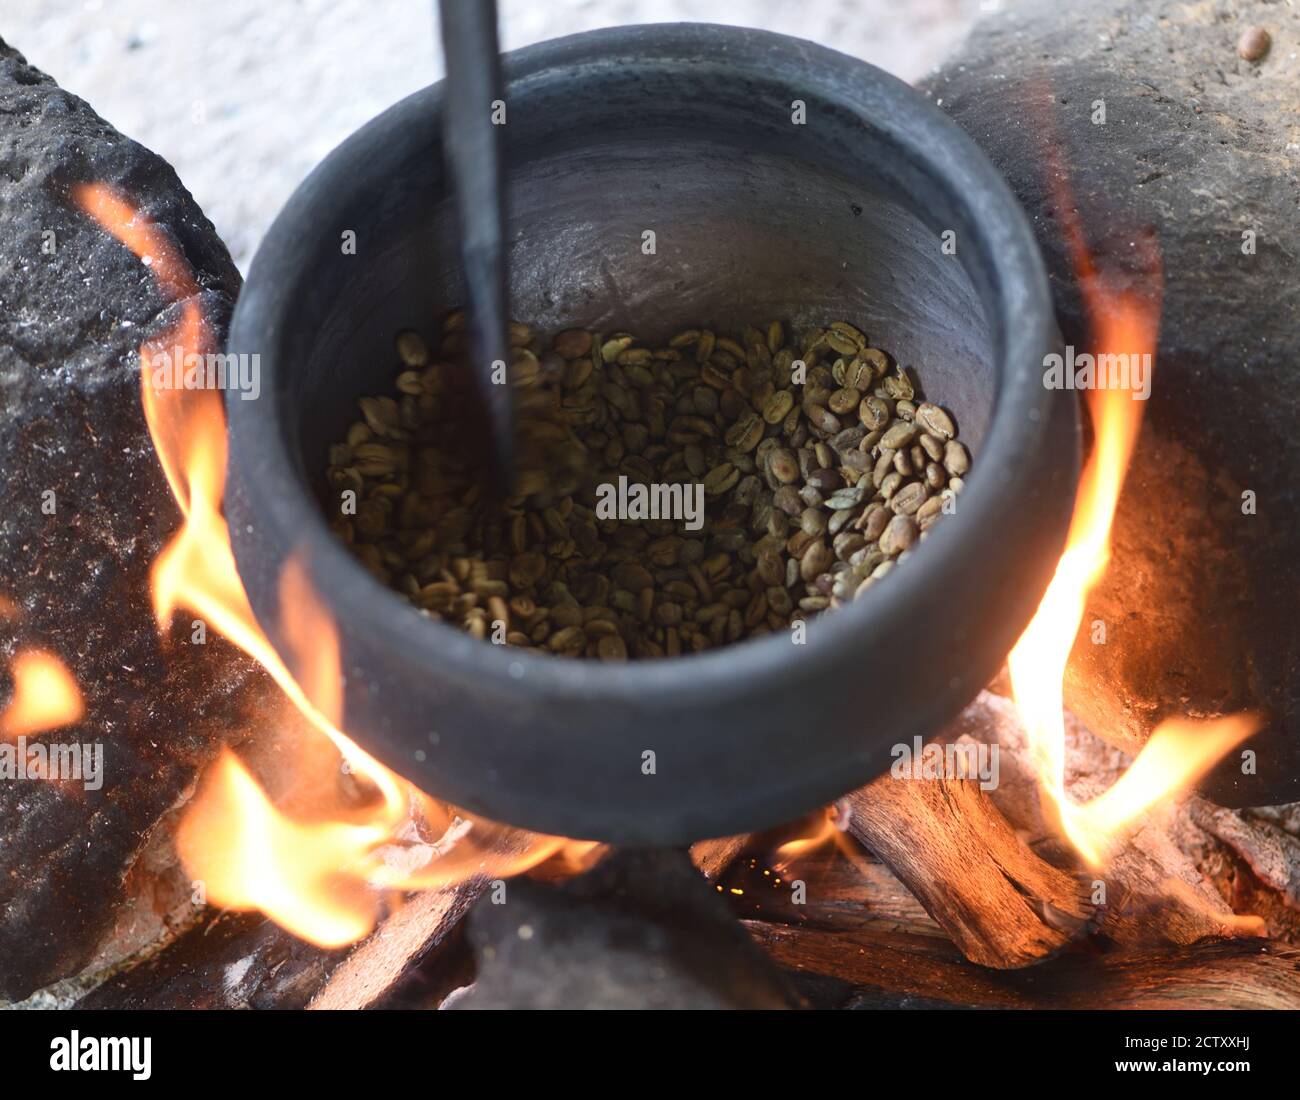 Café local rôti sur un feu de bois ouvert dans une grande marmite en fer. Moshi, Tanzanie. Banque D'Images